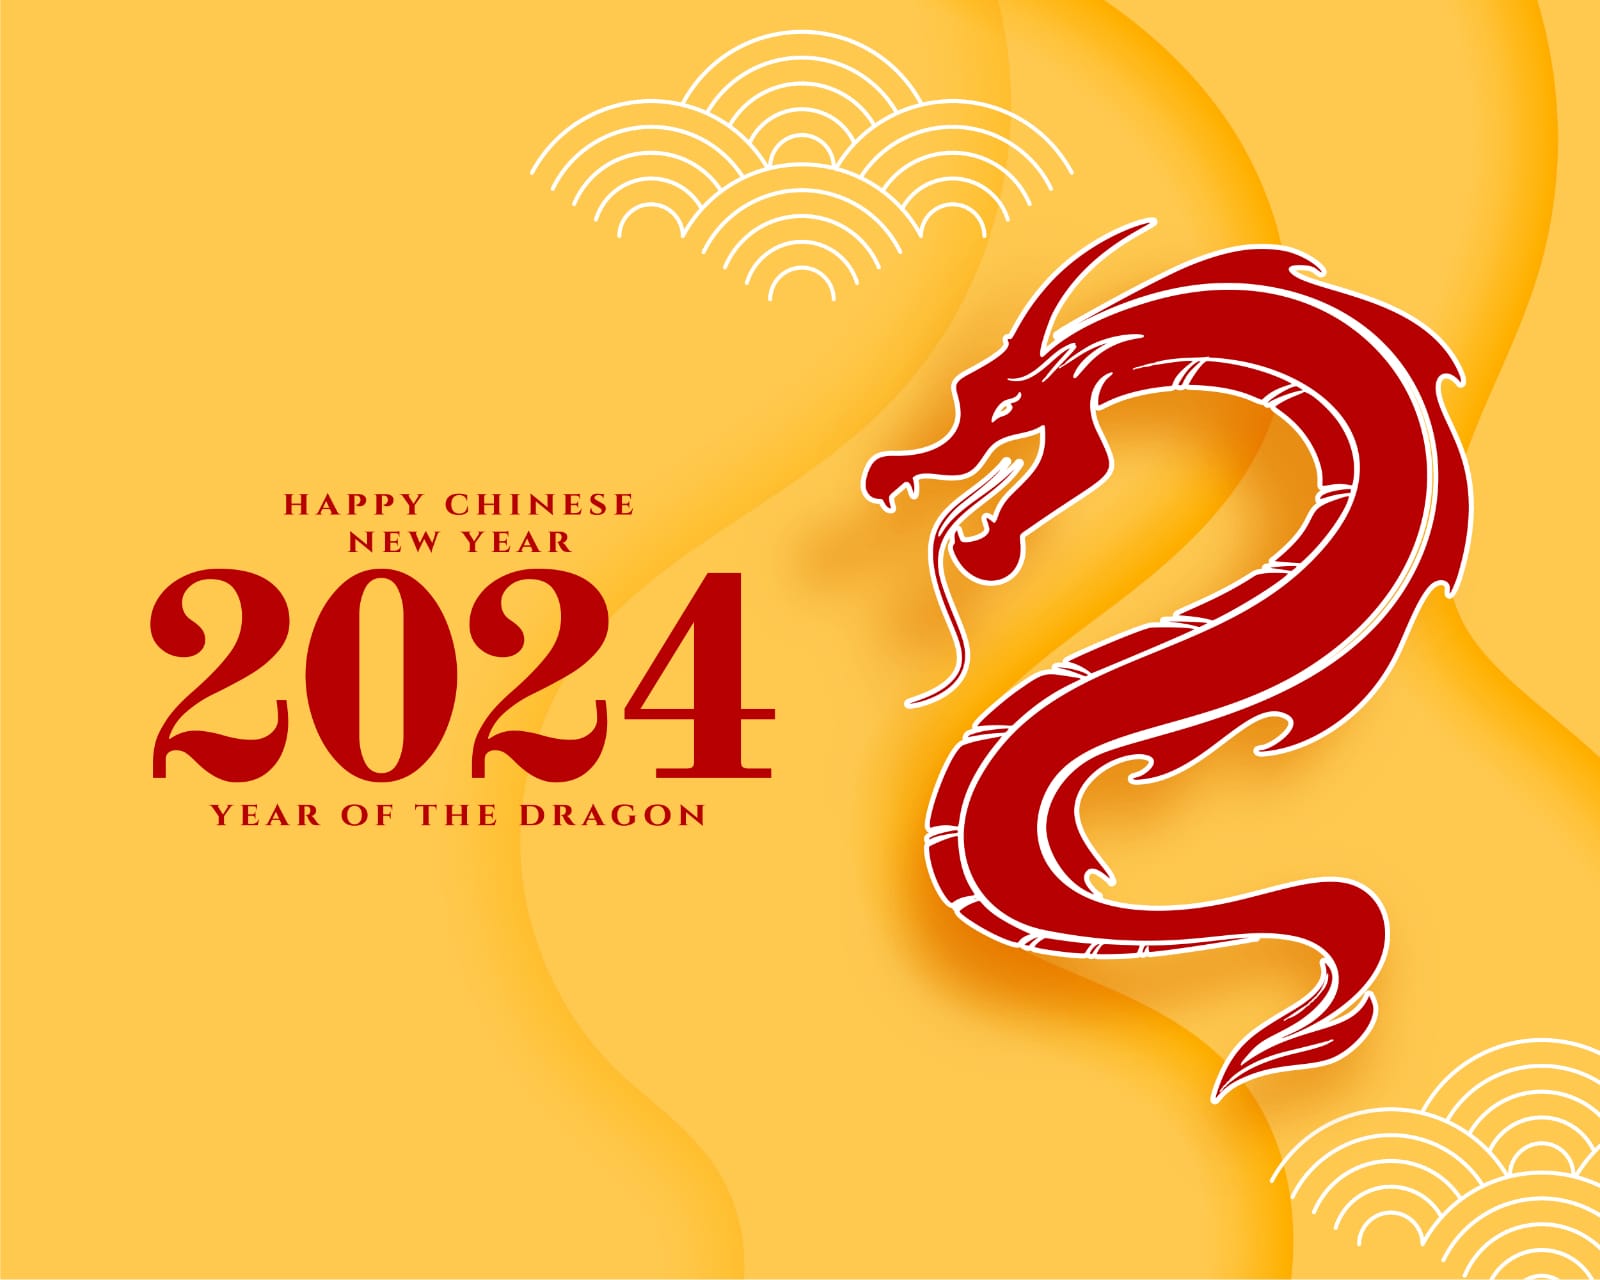 Ramalan Shio 17 Februari 2024 : Shio Ular, Shio Macan, Shio Naga, Shio Kambing, Shio Kelinci